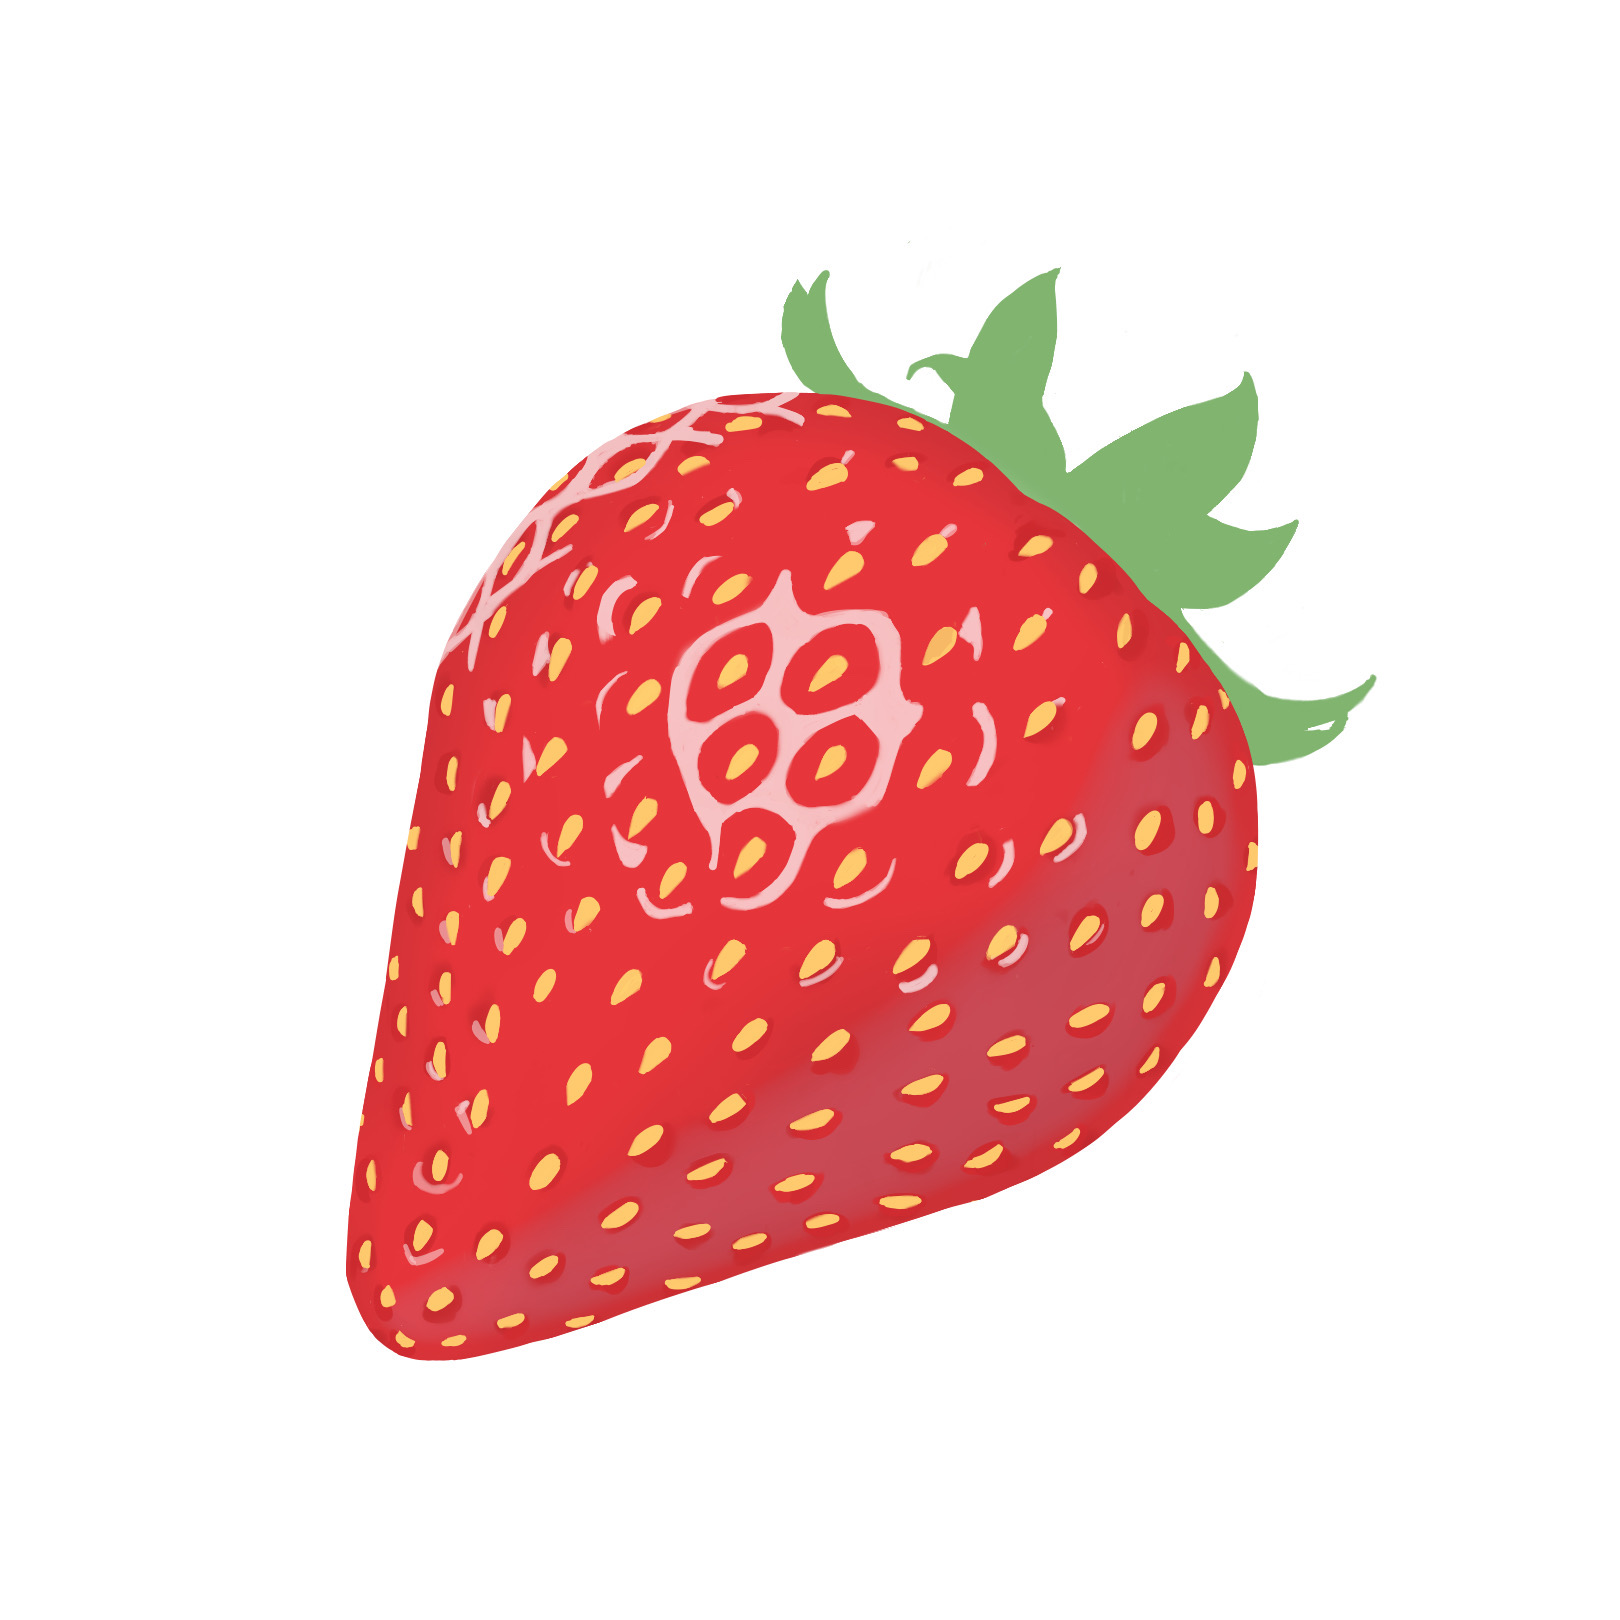 Imagen de una frutilla. A strawberry image